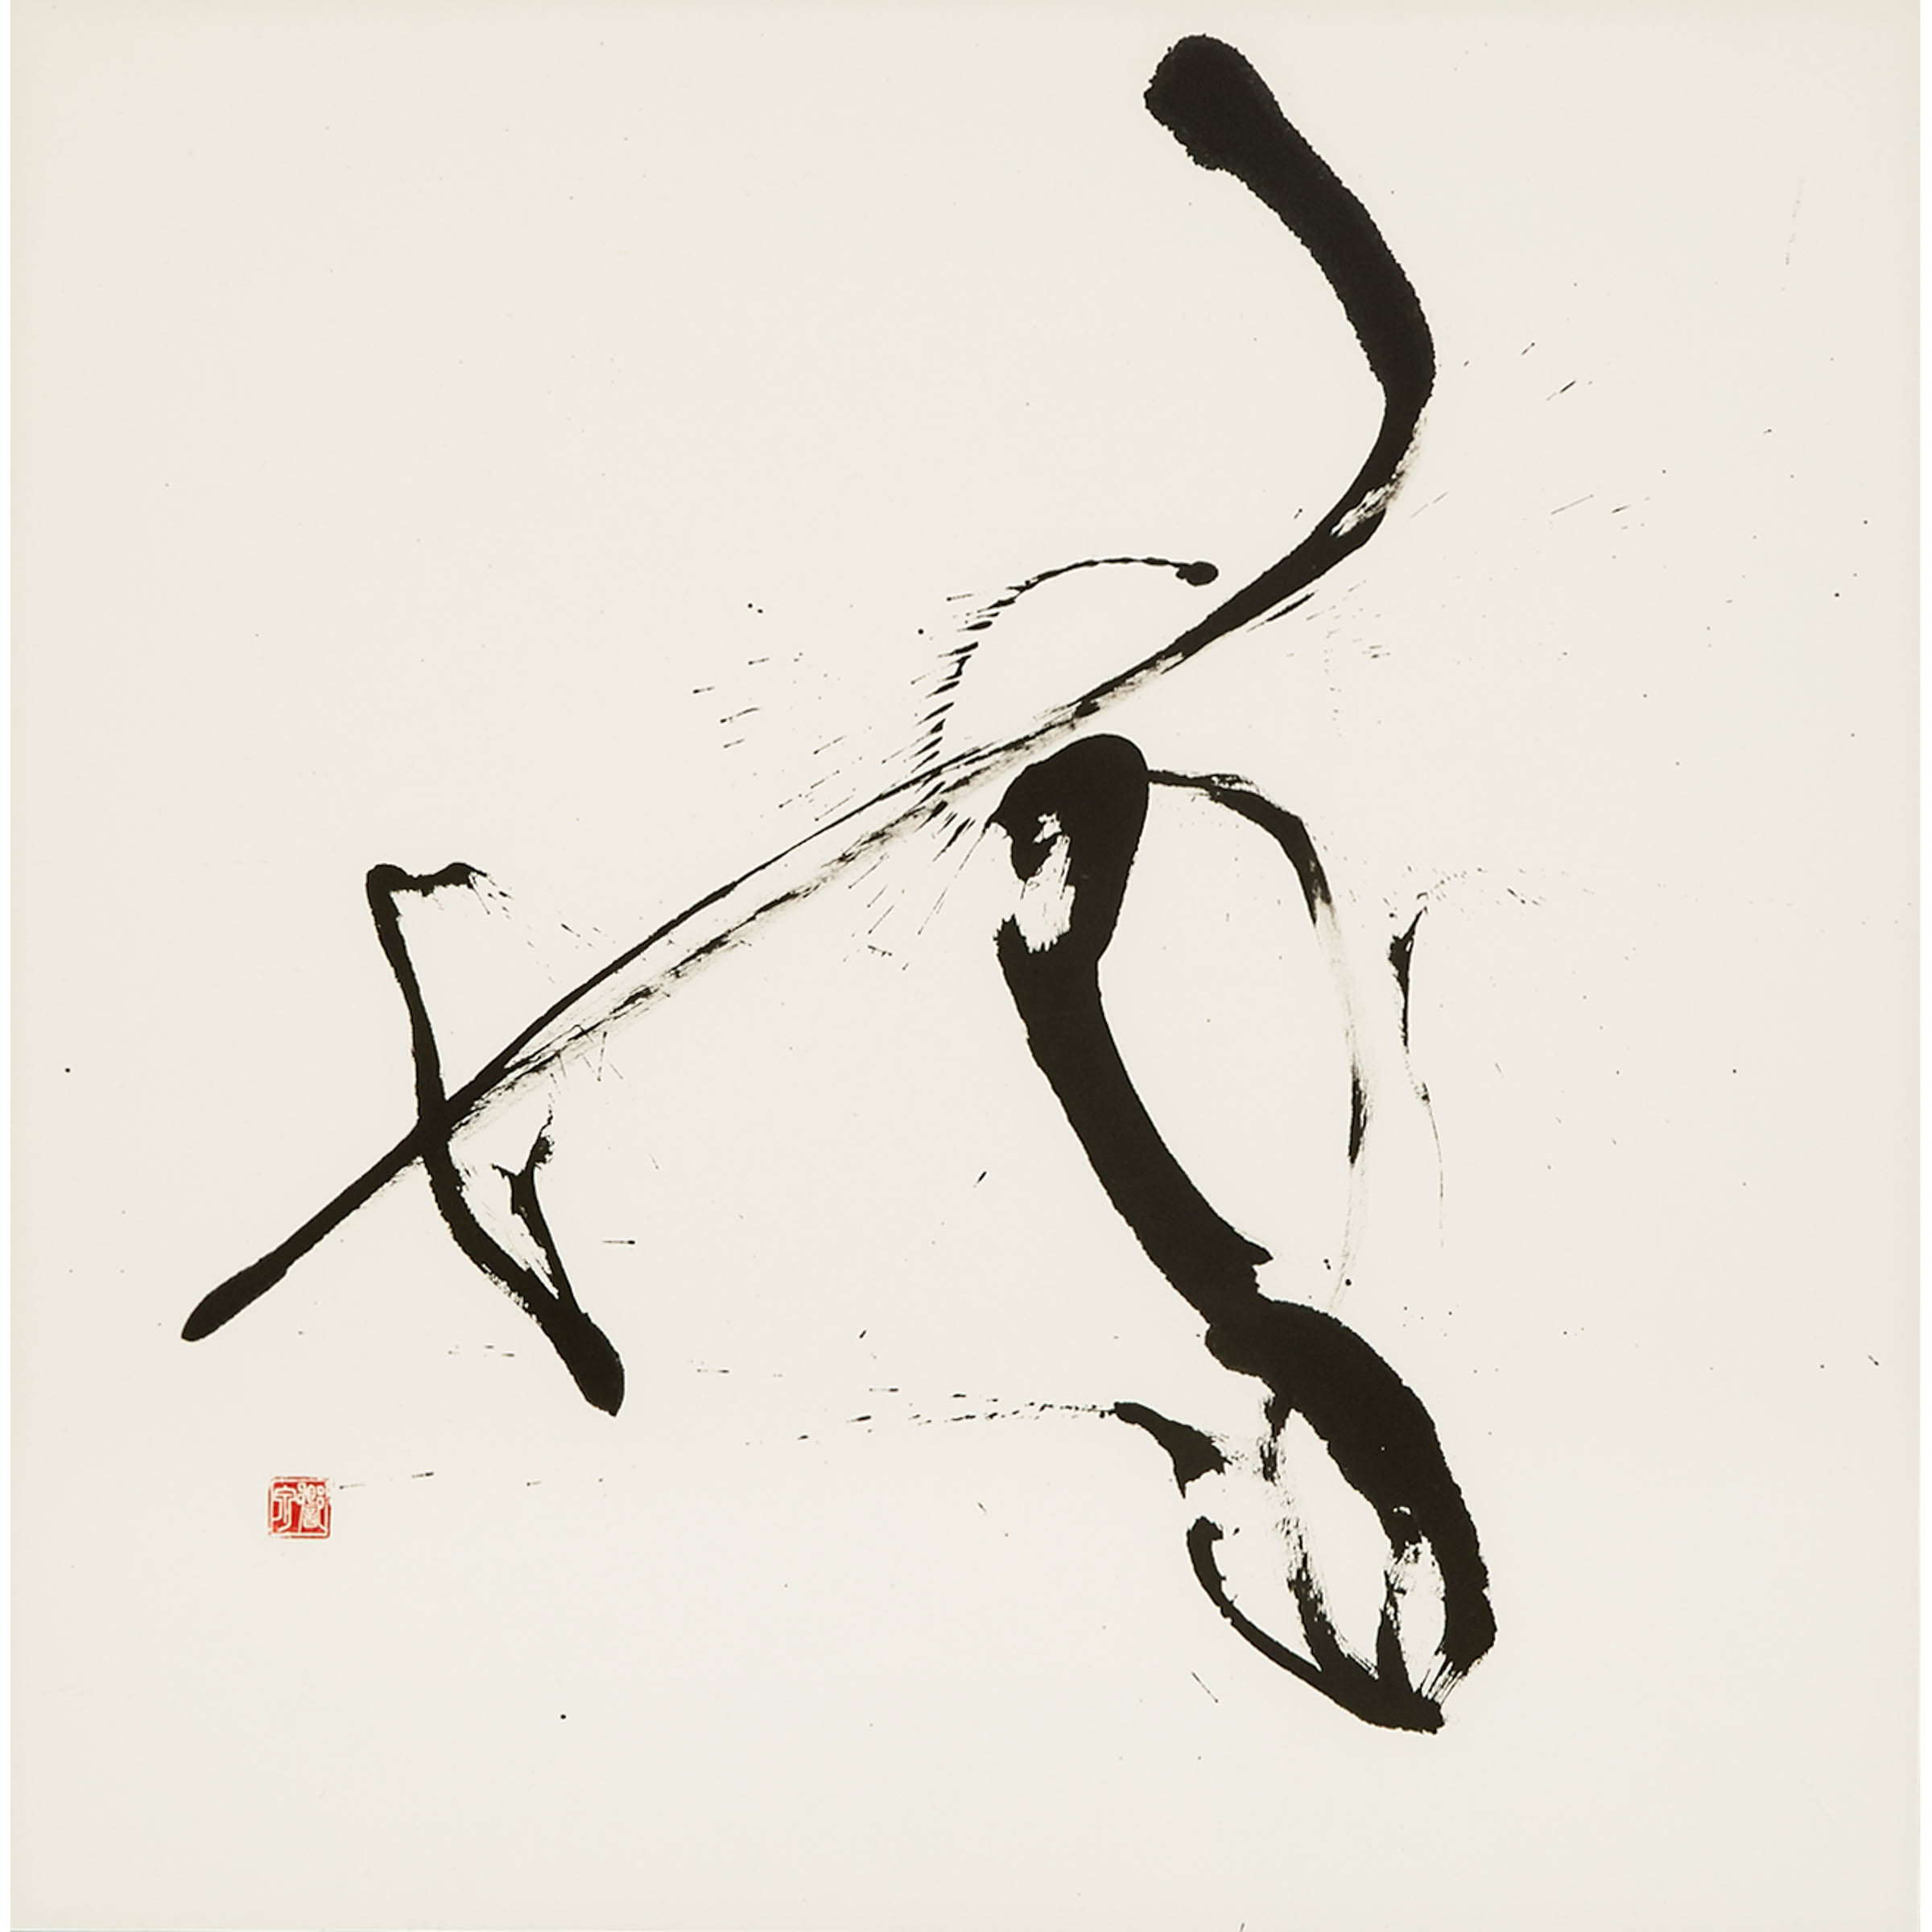 Kyosen Suzuki (B. 1956), Japanese